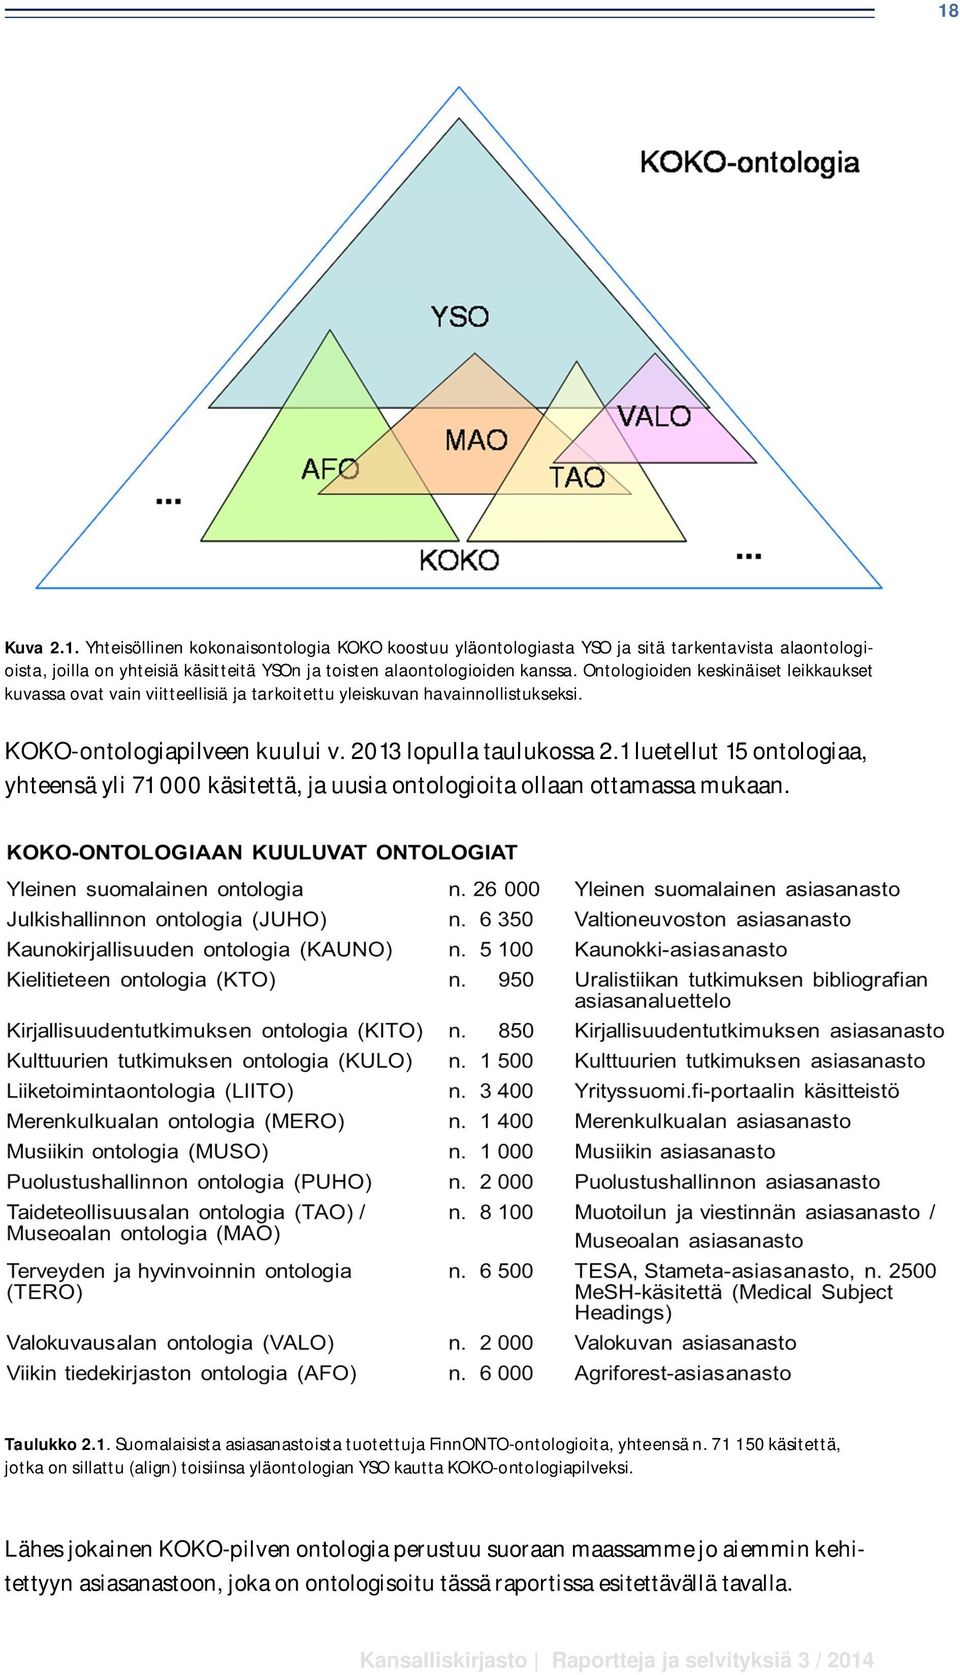 1 luetellut 15 ontologiaa, yhteensä yli 71 000 käsitettä, ja uusia ontologioita ollaan ottamassa mukaan. Taulukko 2.1. Suomalaisista asiasanastoista tuotettuja FinnONTO-ontologioita, yhteensä n.